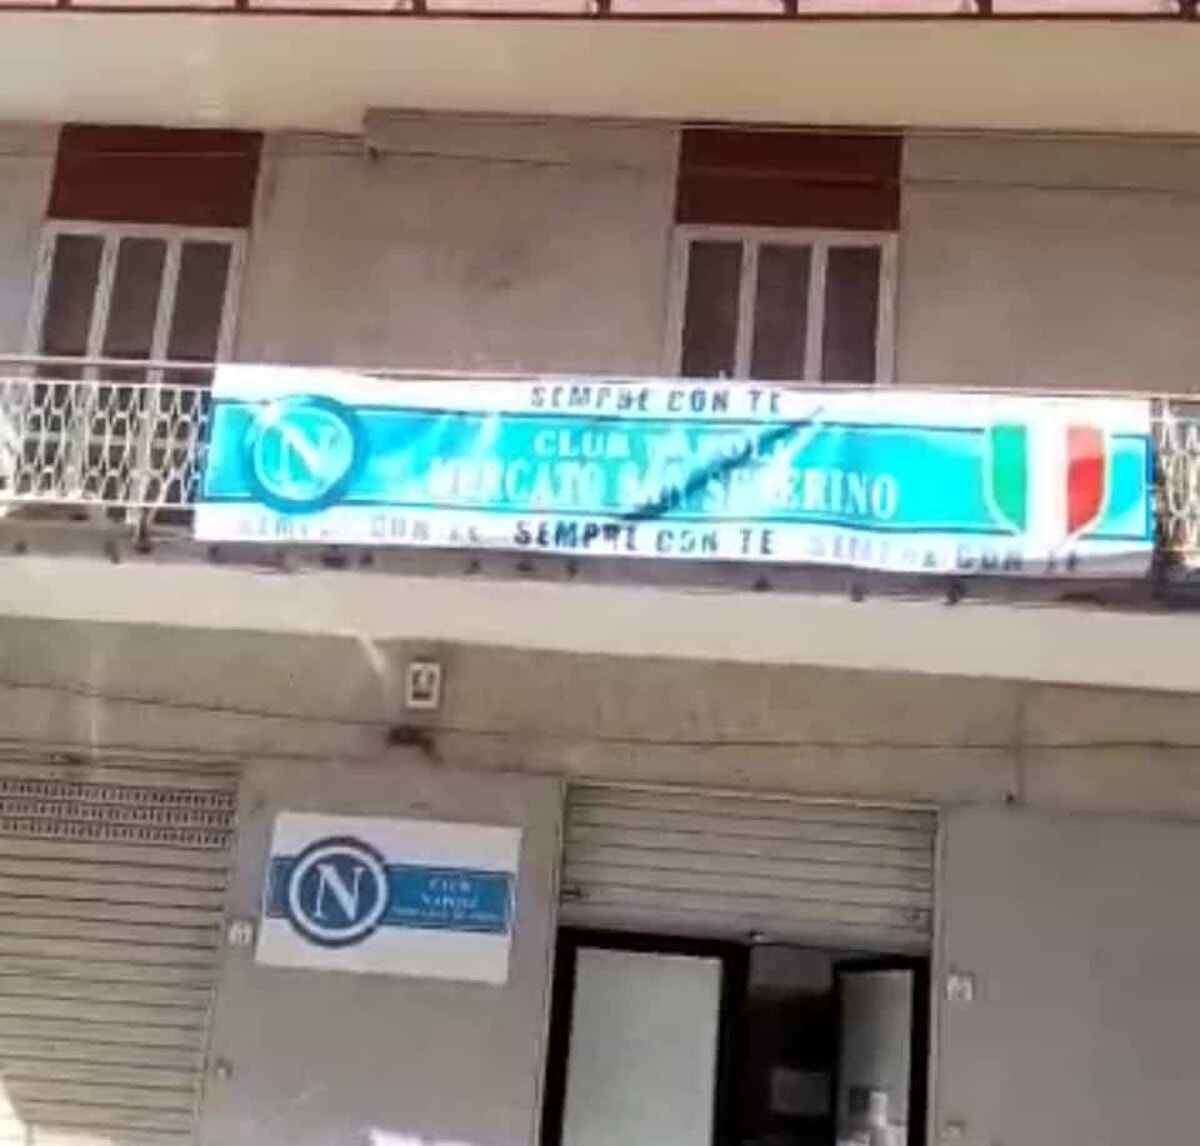 Scudetto del Napoli: trafugato lo striscione del club di Mercato San Severino, festeggiamenti anche ad Agropoli